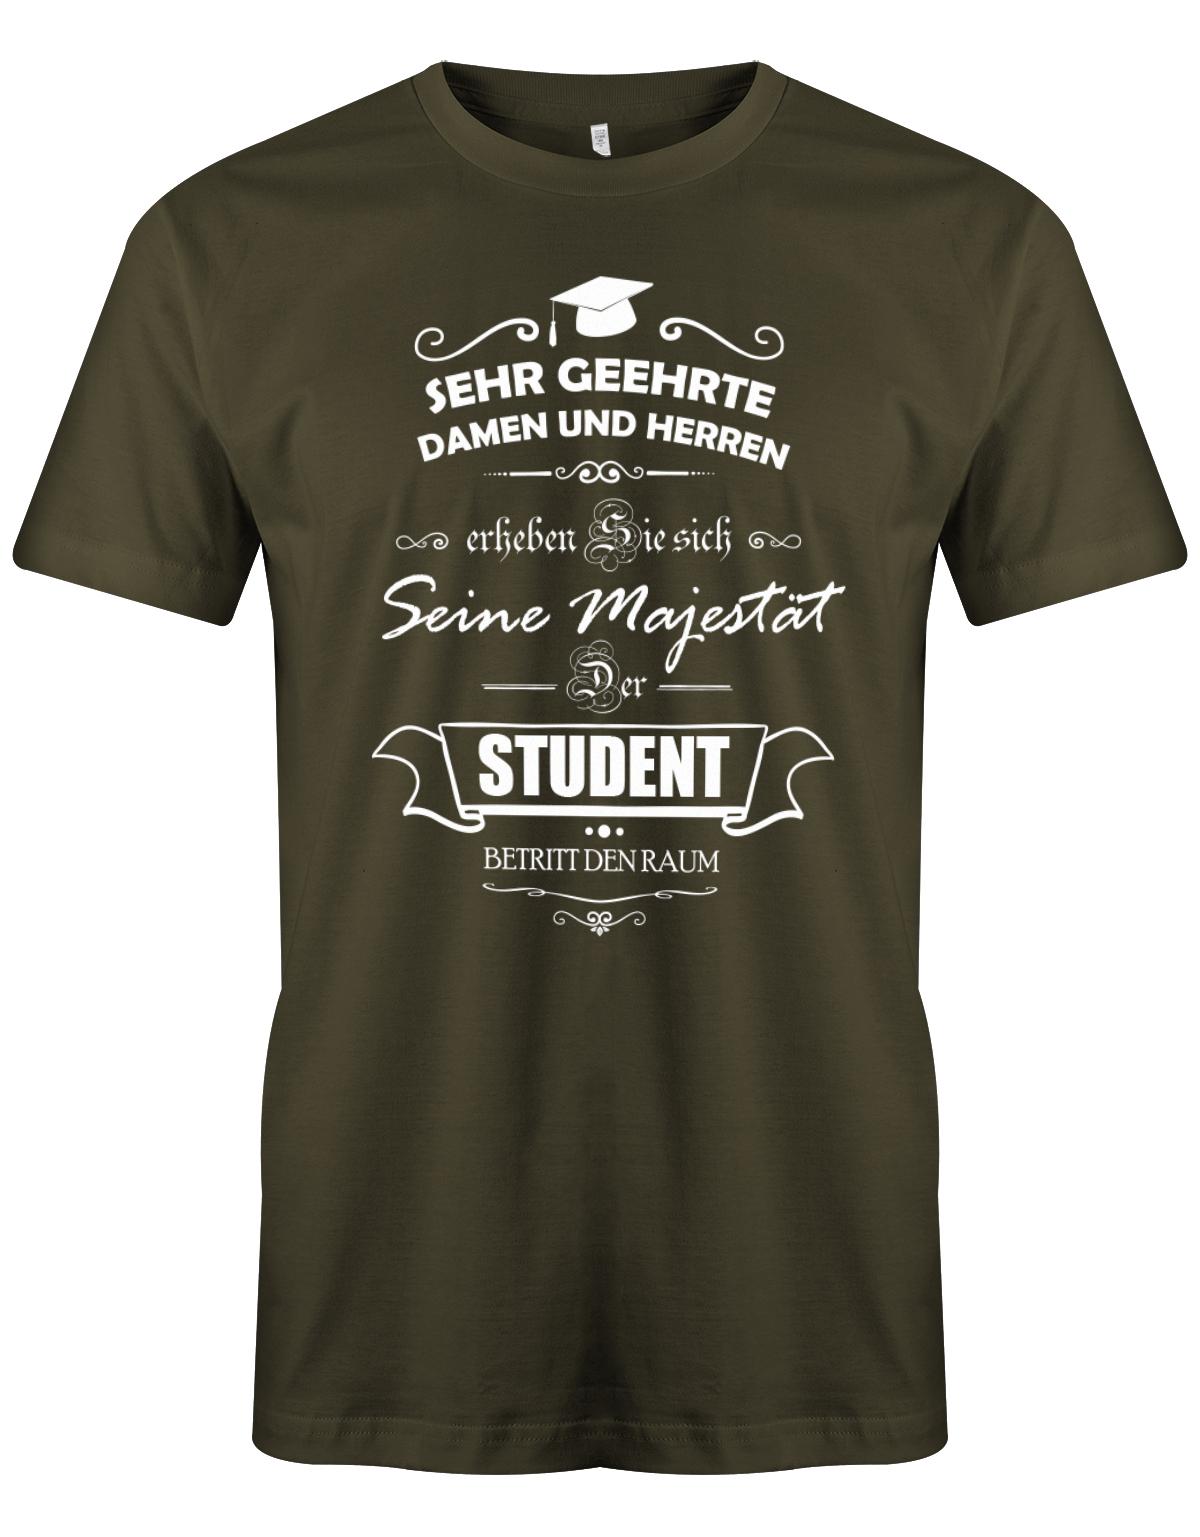 Seine-Majest-t-der-Student-betritt-den-Raum-Herren-Studium-Student-Shirt-Army